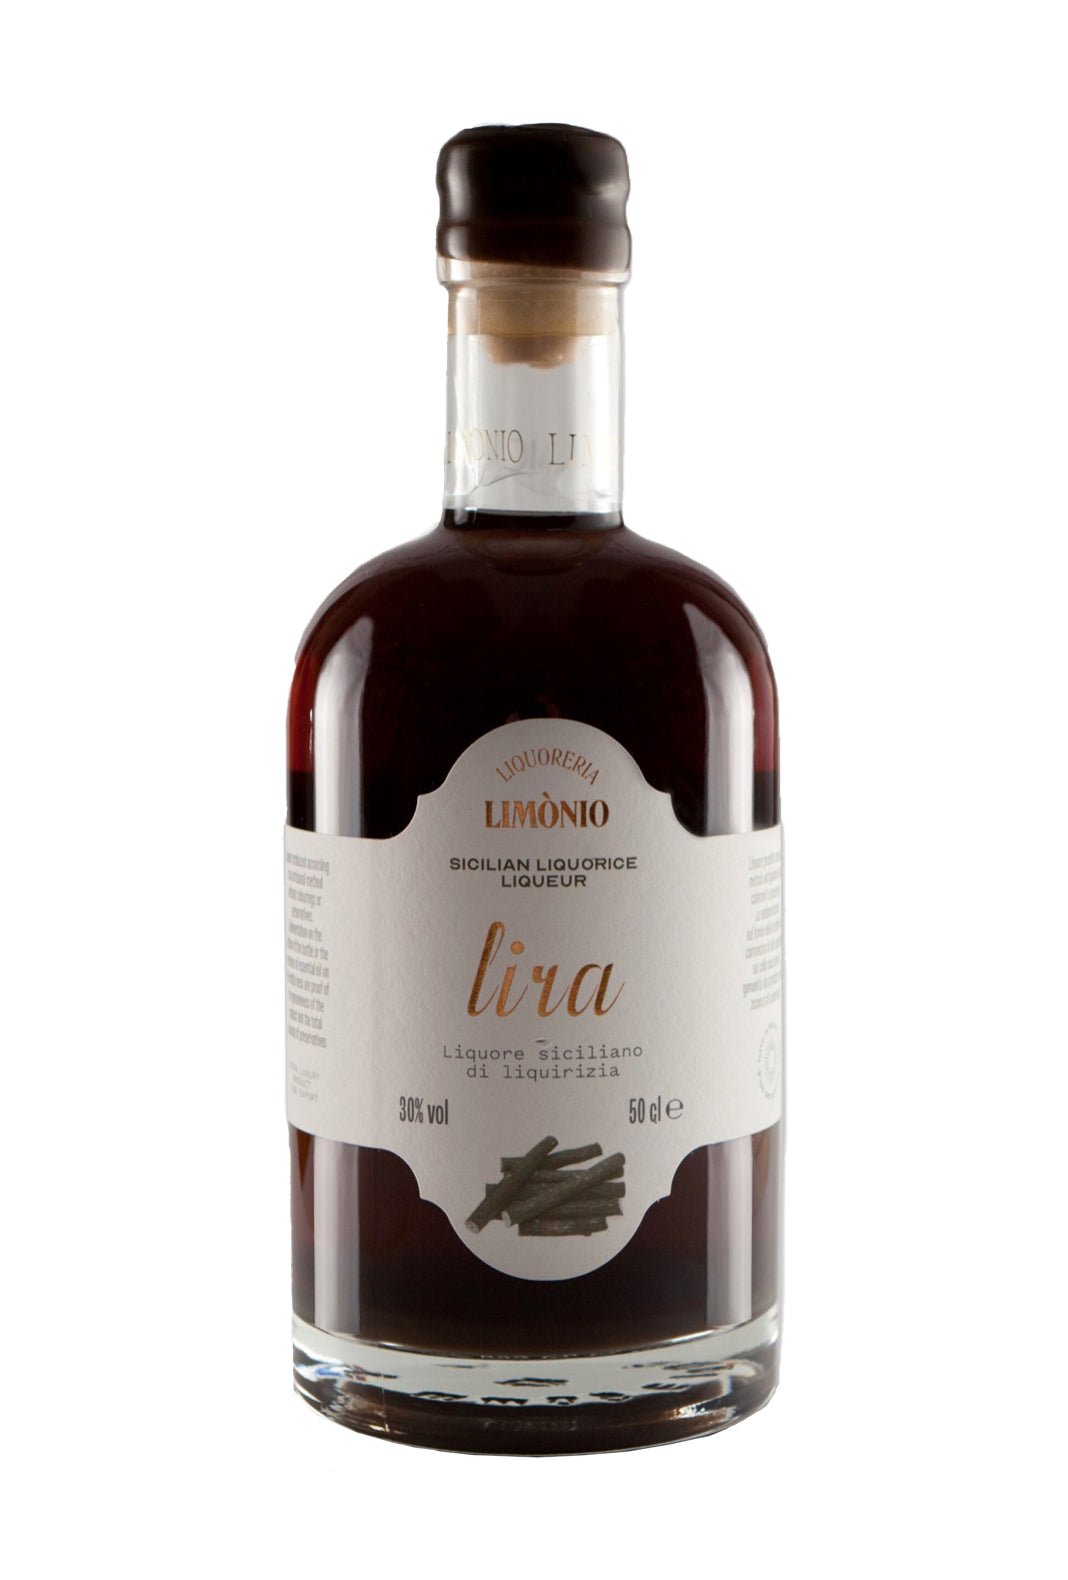 Limonio Liquorice Liqueur 32% 500ml | Liqueurs | Shop online at Spirits of France